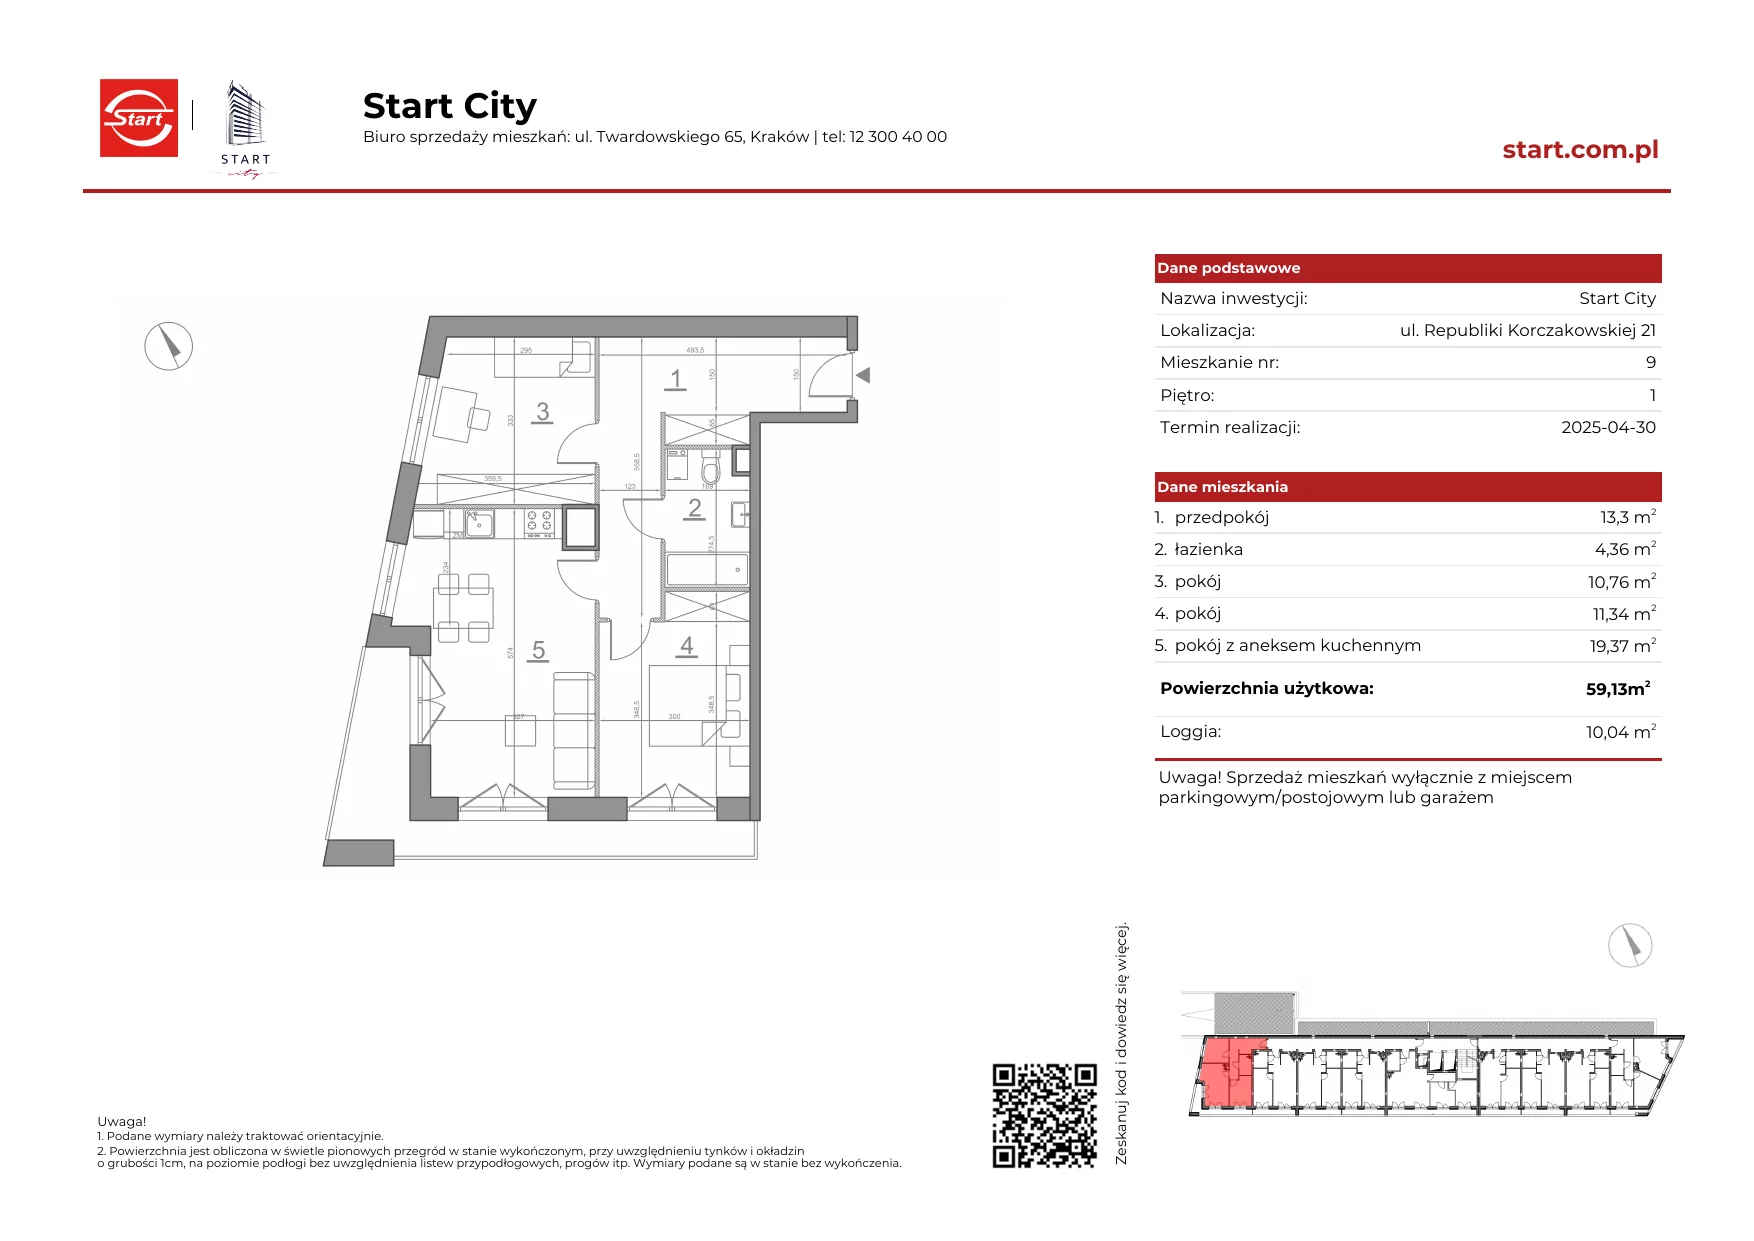 Mieszkanie 59,13 m², piętro 1, oferta nr 21/9, Start City, Kraków, Bieżanów-Prokocim, ul. Republiki Korczakowskiej 21